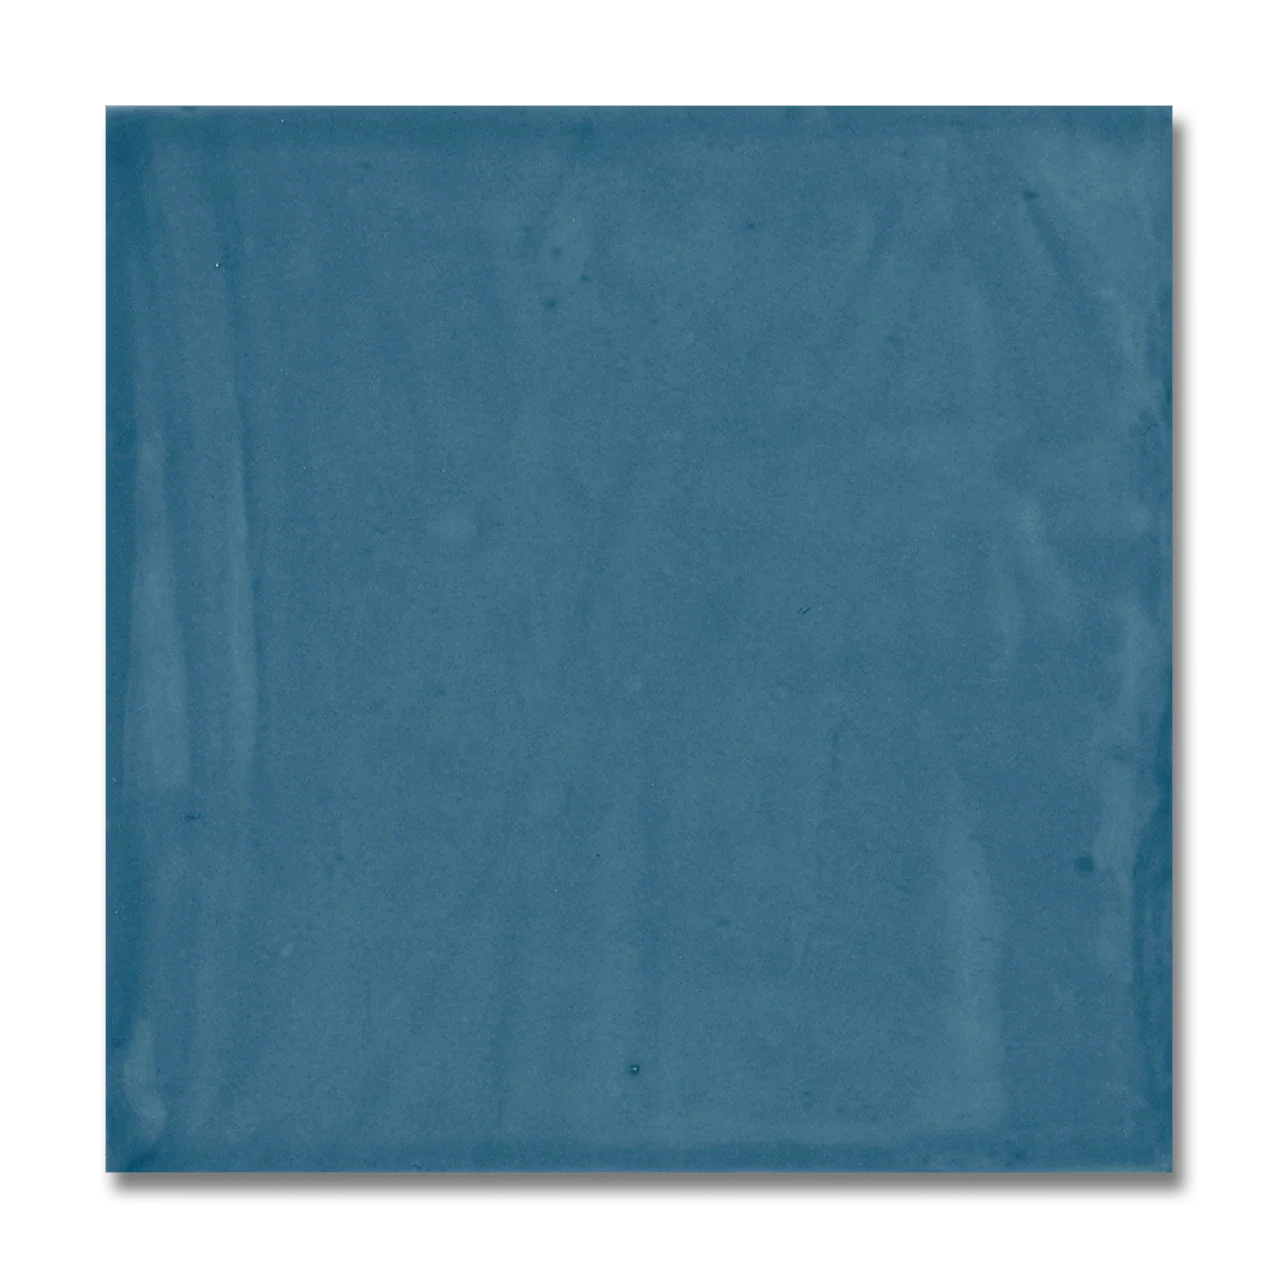 St. Topez Glazed Ceramic Wall Tile 5”x5” Azul